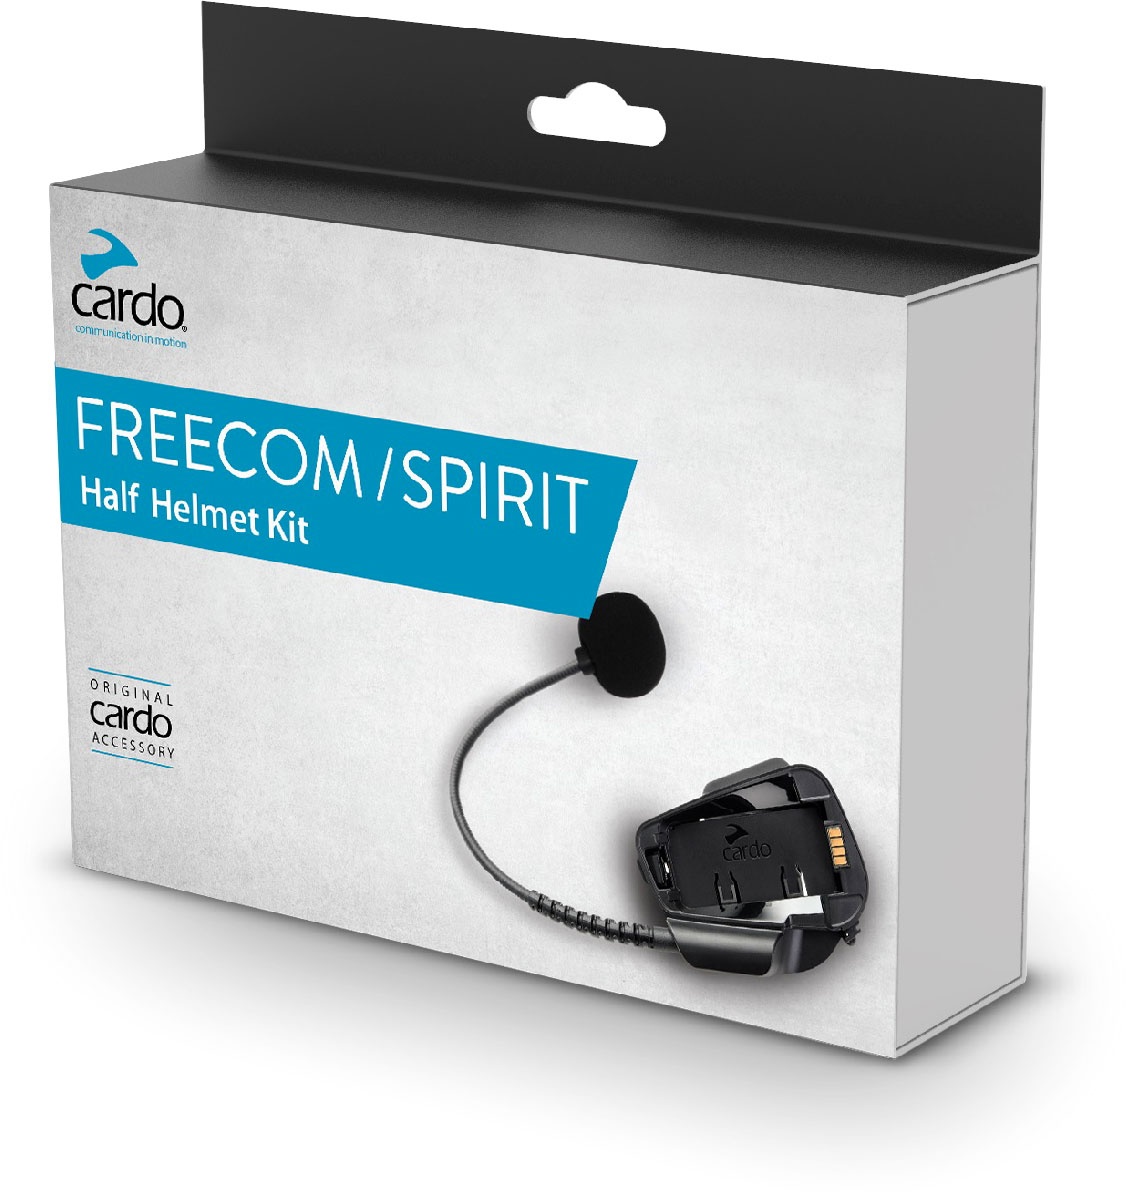 Cardo Freecom/Spirit, kit demi-casque - Original